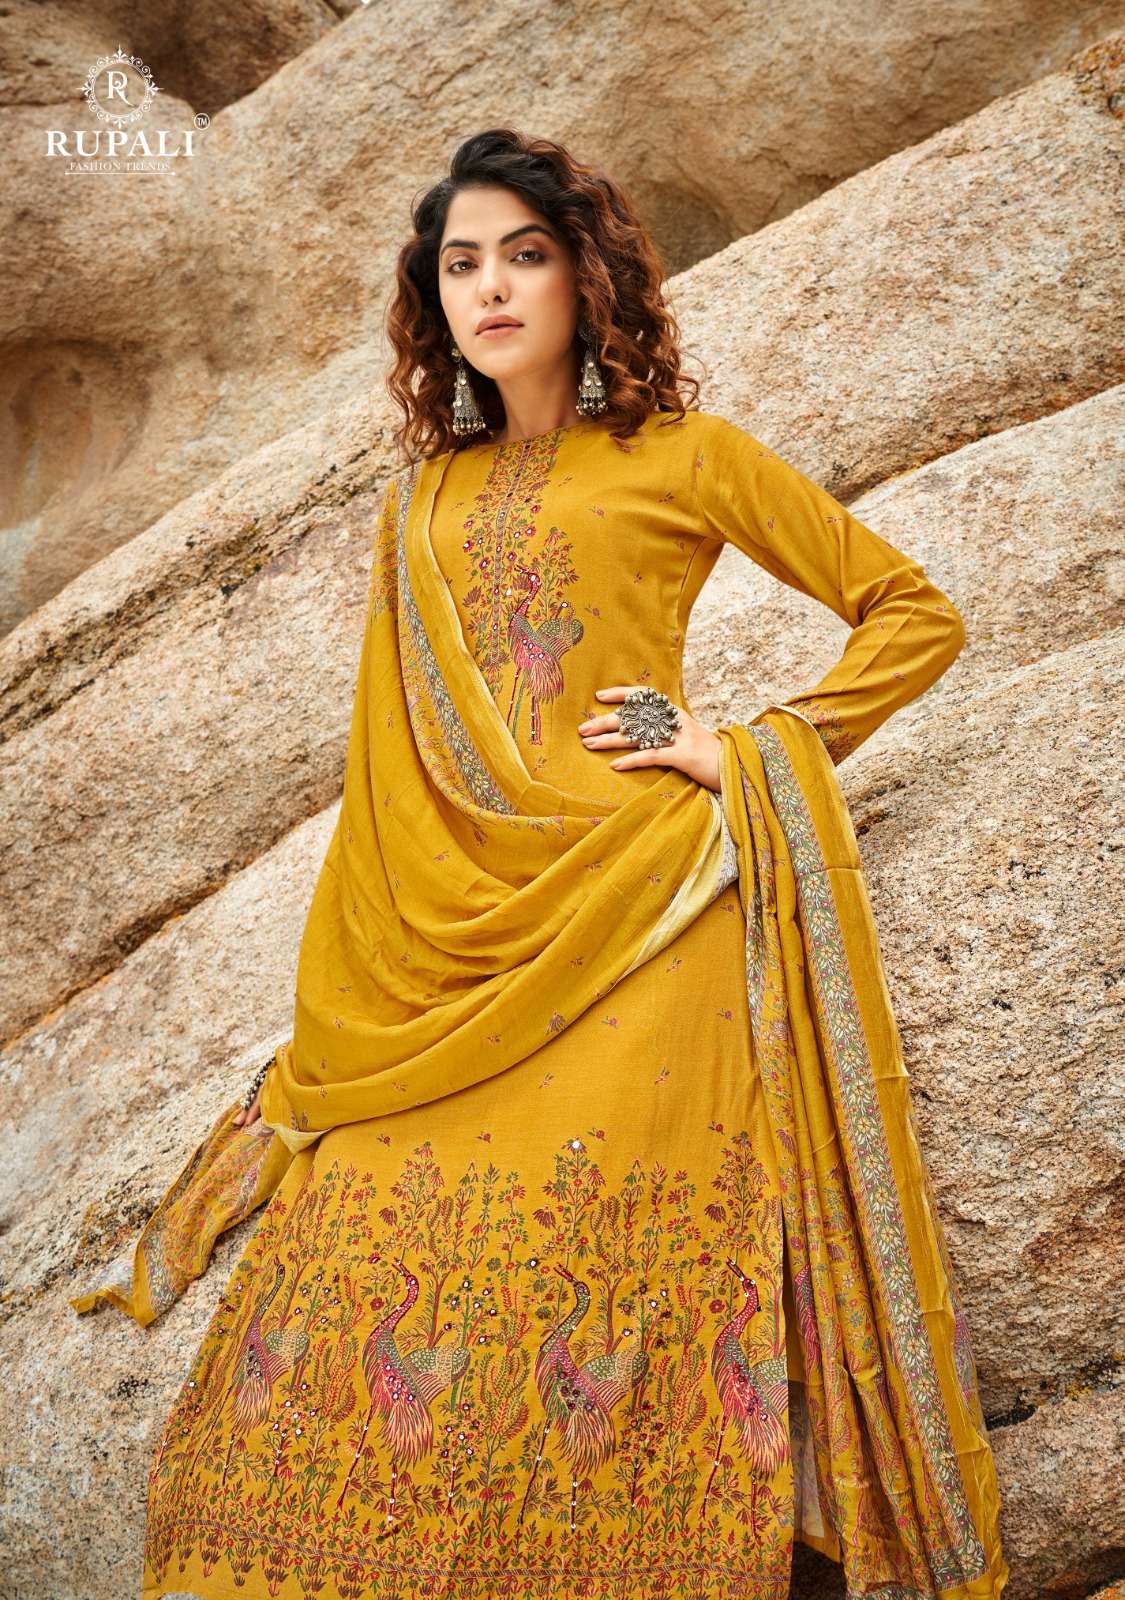 rupali fashion aashvi 8801-8806 series indian designer salwar kameez catalogue online market surat